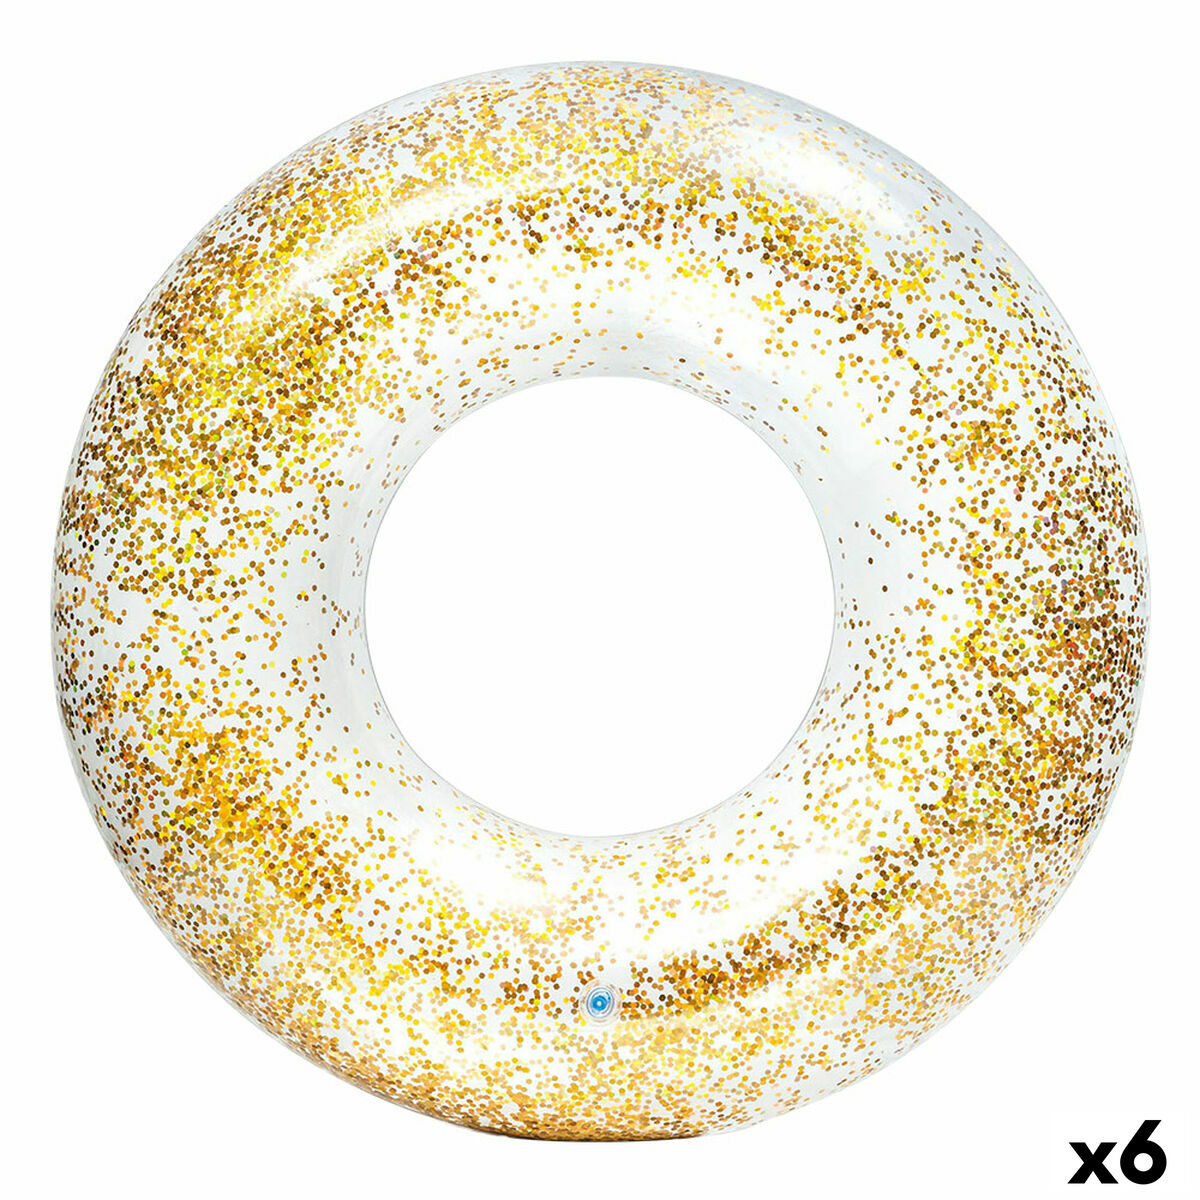 Salvagente Gonfiabile Donut Intex Trasparente Porporina  119 cm (6 Unità) - Disponibile in 3-4 giorni lavorativi